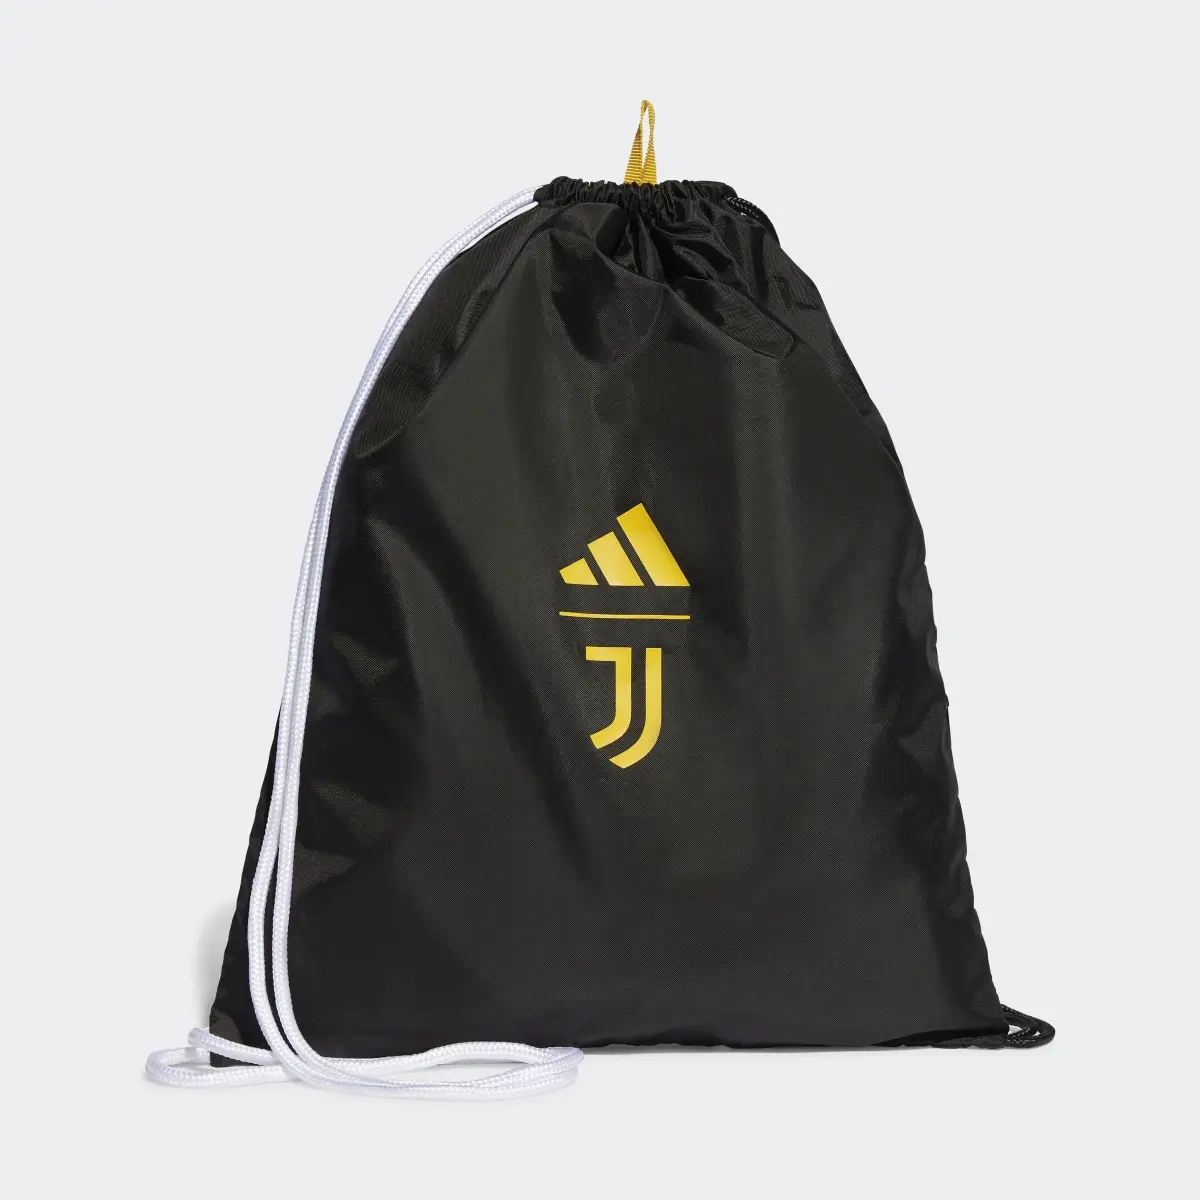 Adidas Juventus Turin Sportbeutel. 2